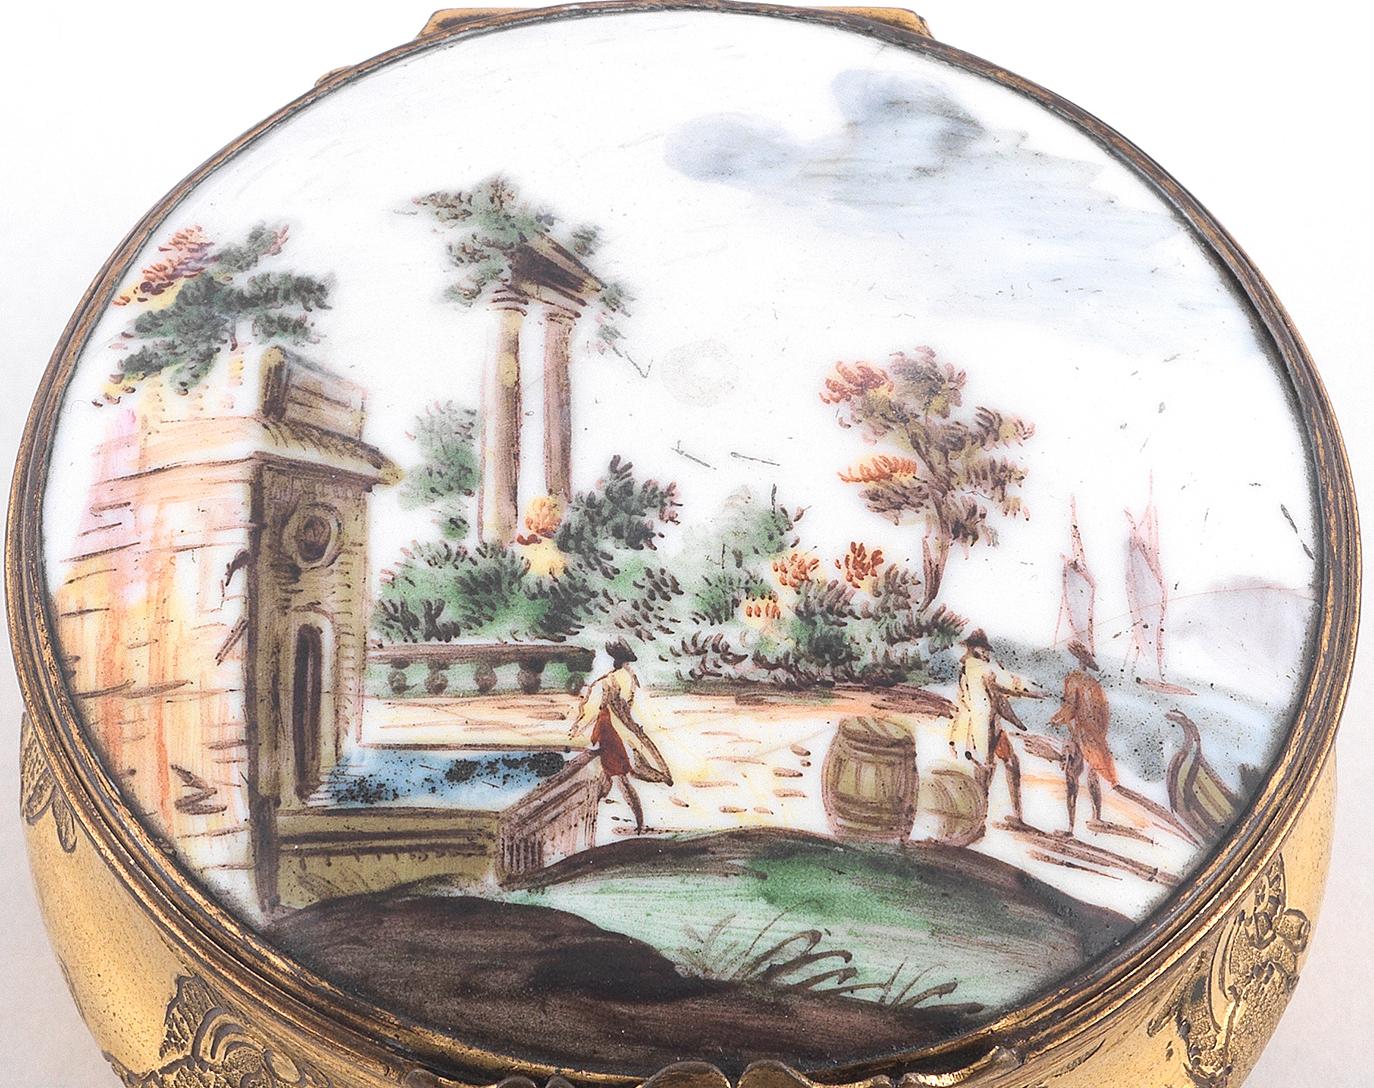 Le couvercle est orné d'un panneau émaillé représentant un Capriccio portuaire, le dessous est peint d'un moustique, les côtés bombés sont gravés de diverses volutes de rocaille avec une base en écaille pressée, diamètre 6.3cm.